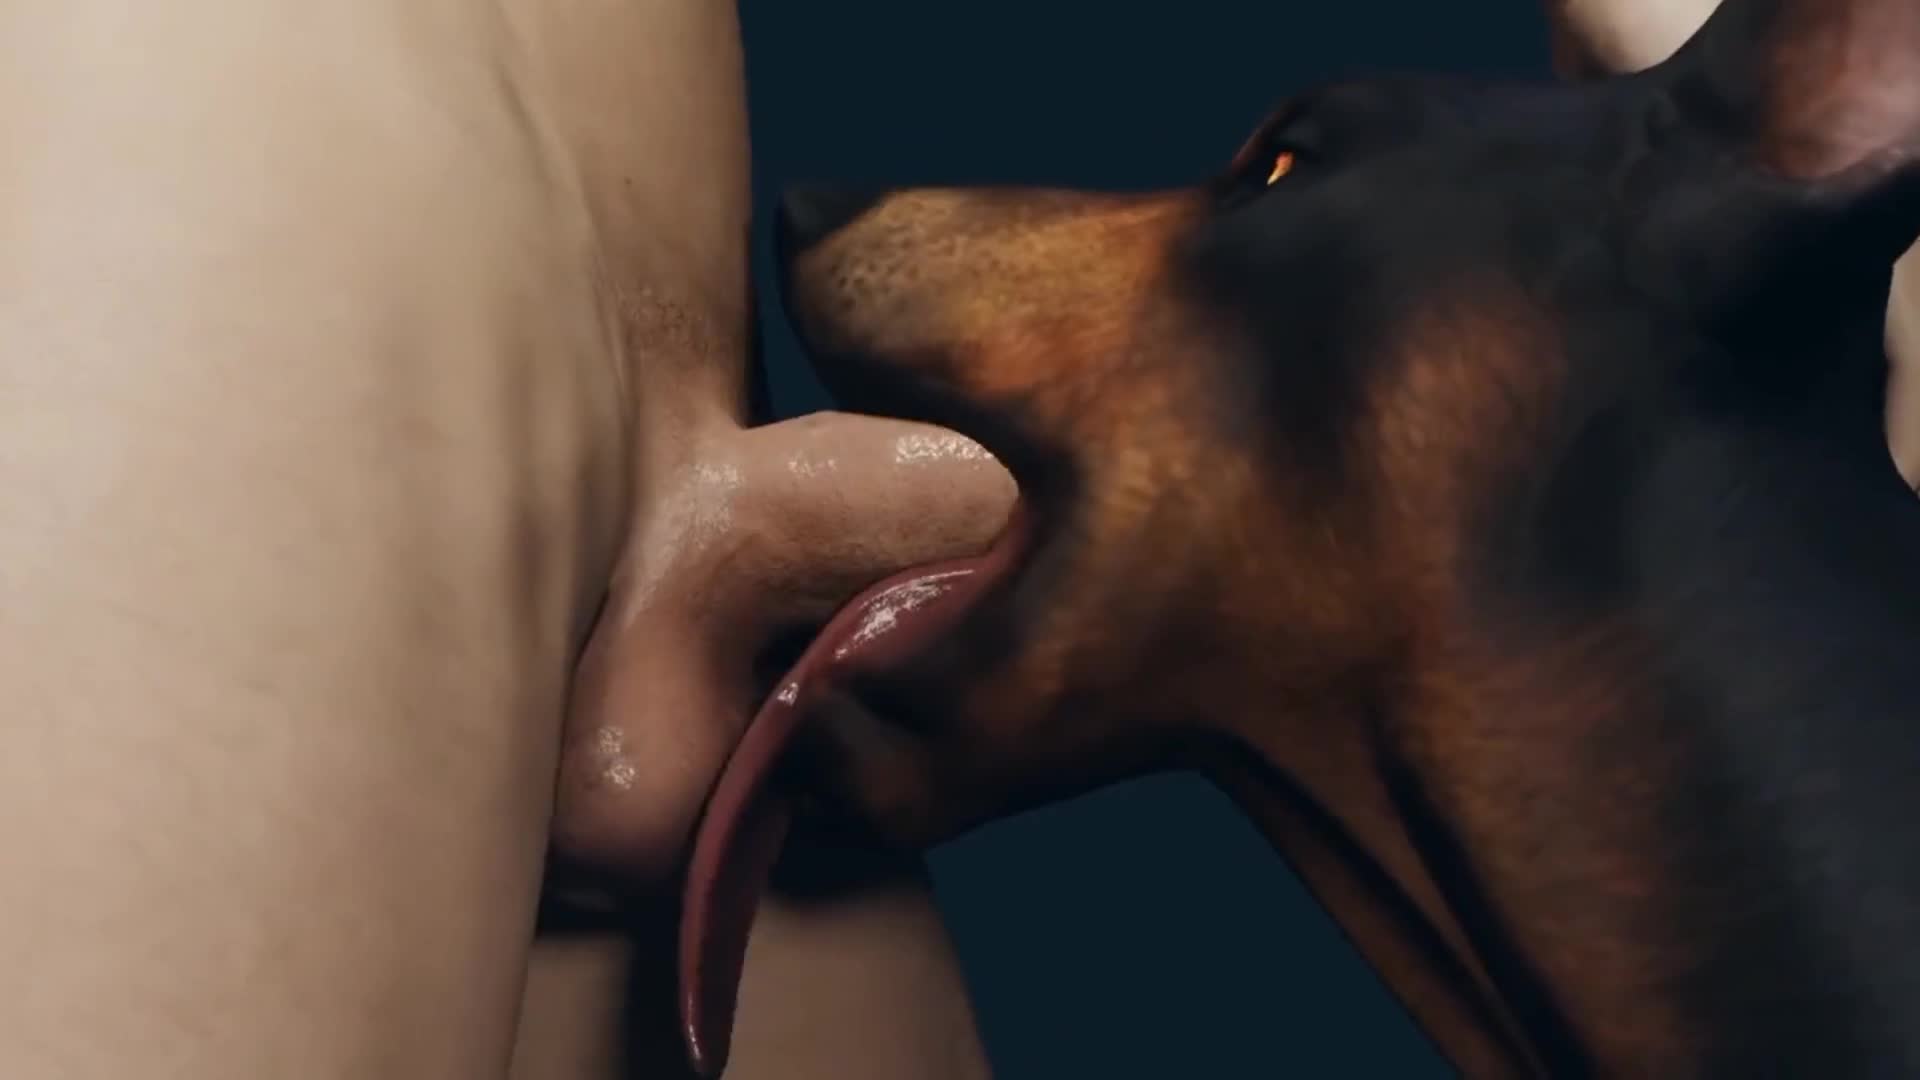 Dog face fuck porn